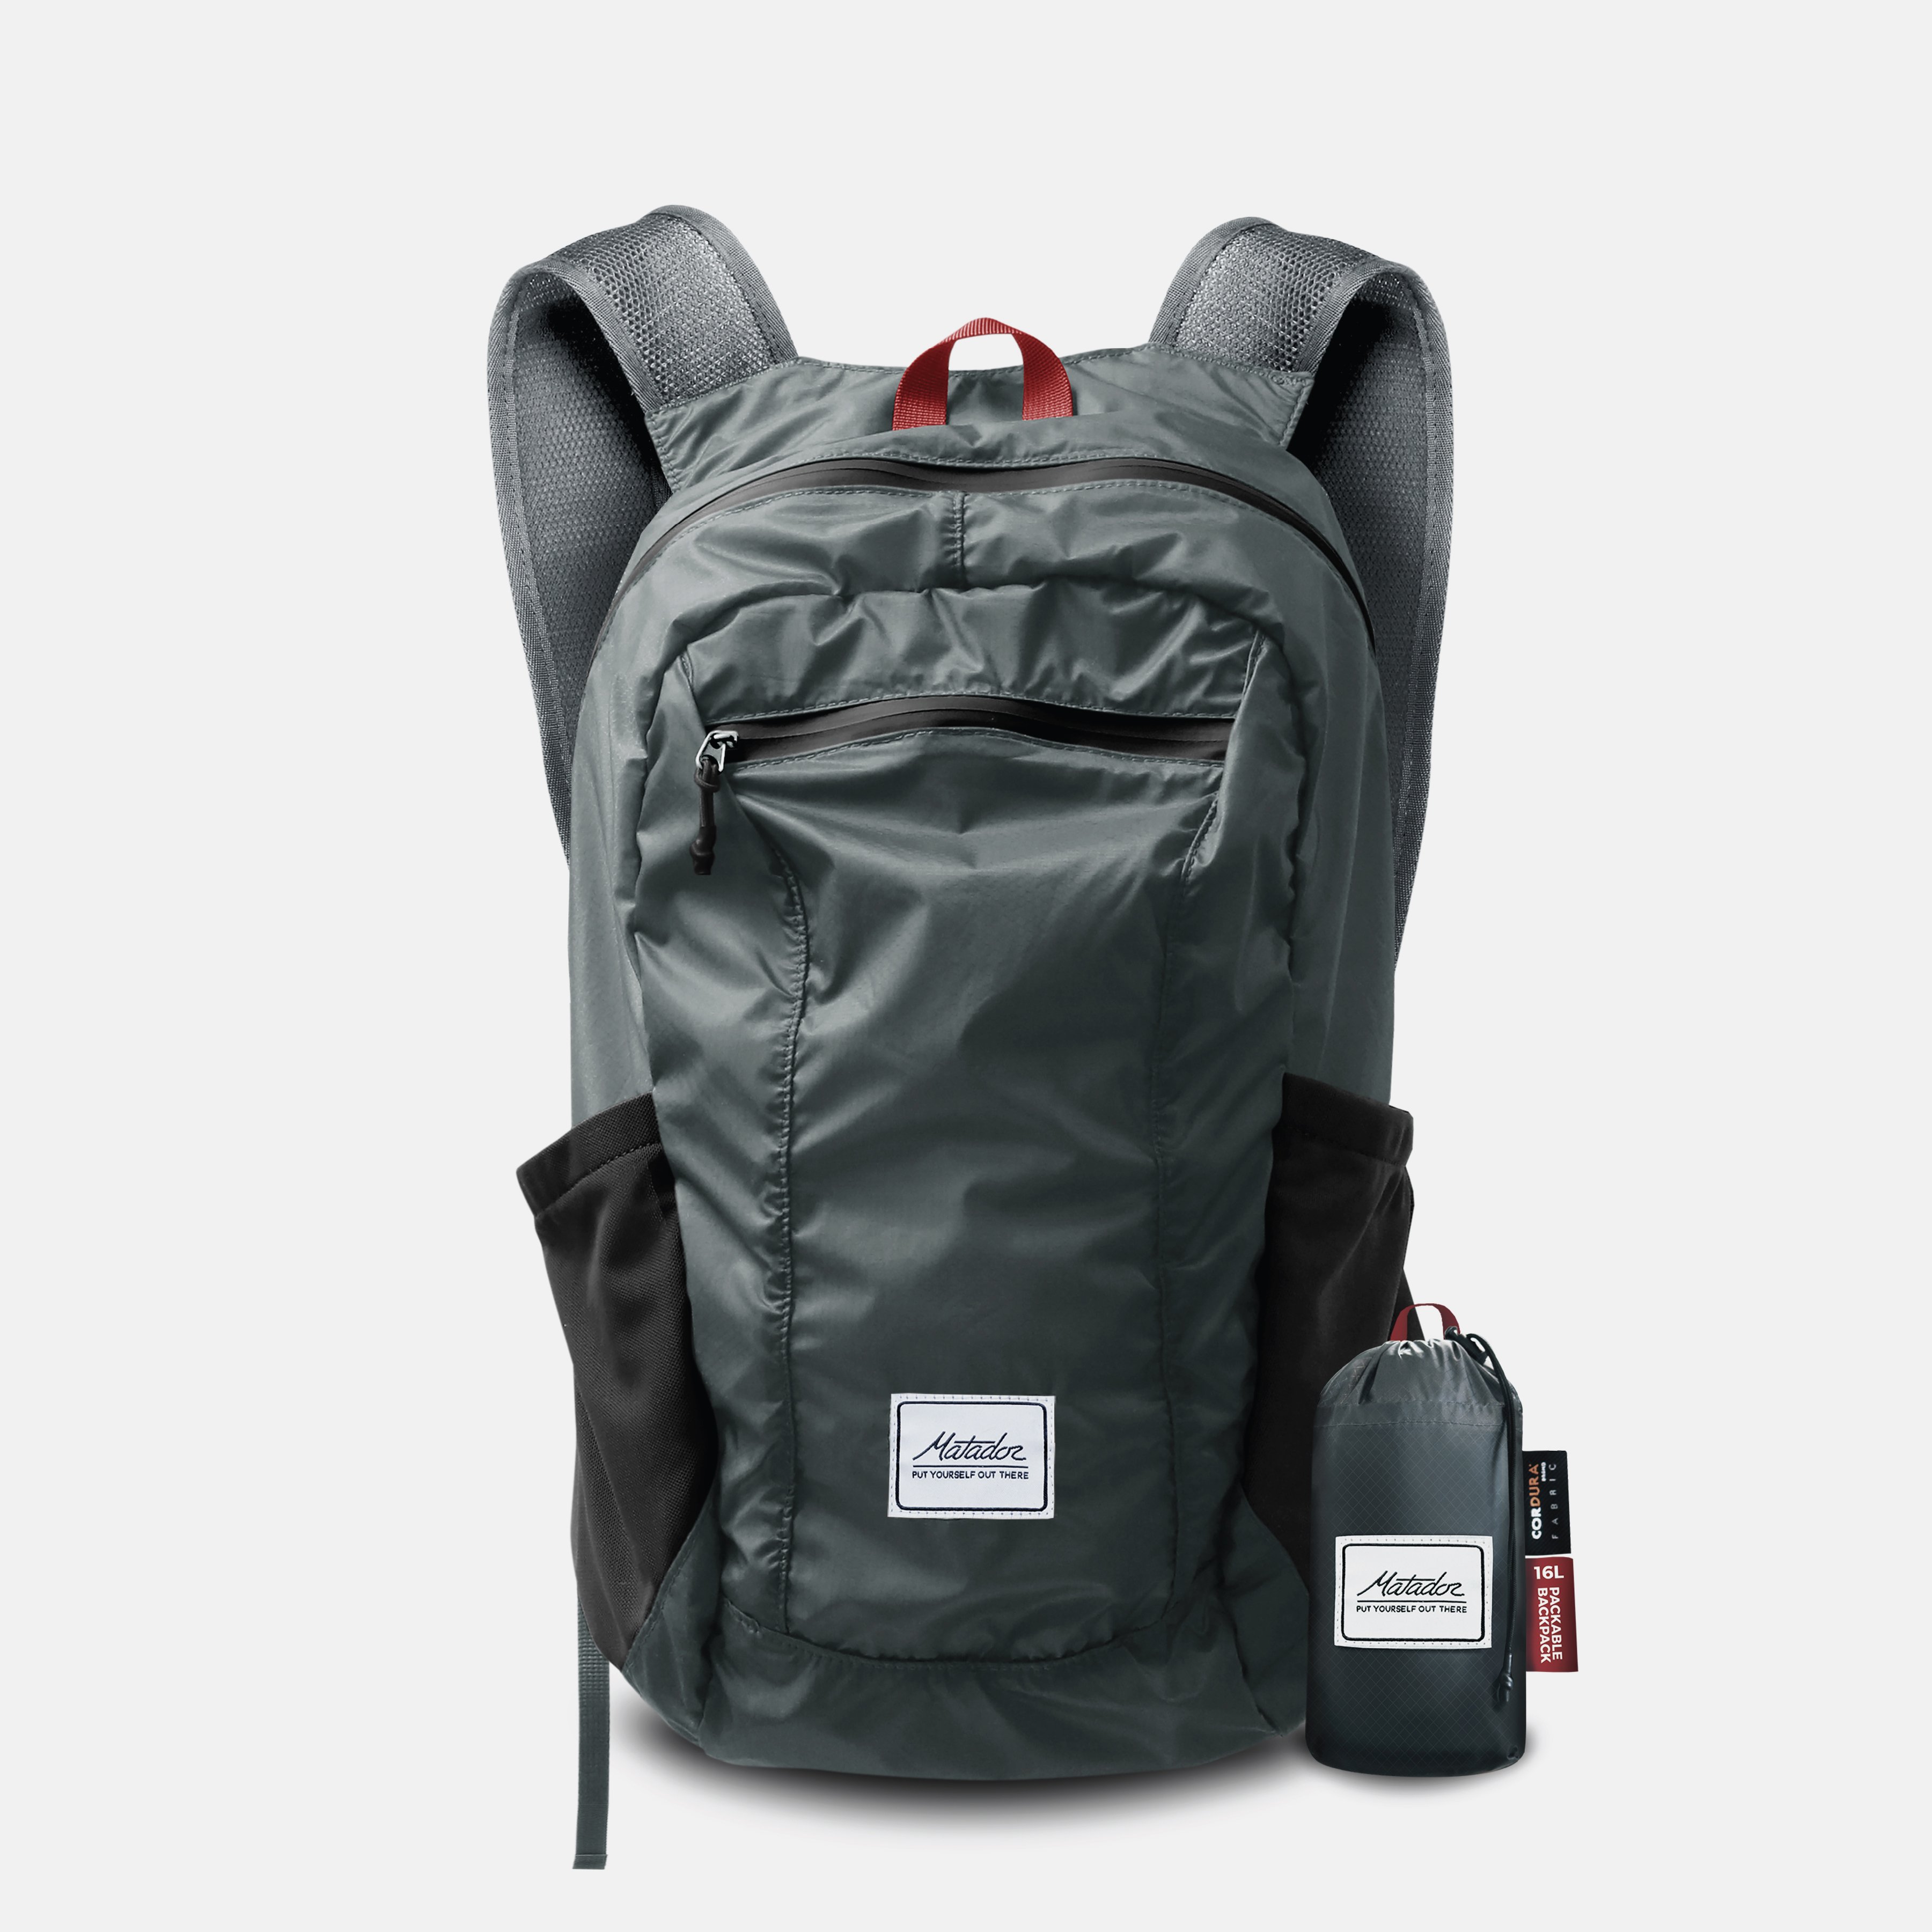 ├登山樂┤美國 Matador DayLite16 Packable Backpack 16L 購物包-紳士灰 # MATDL16001G